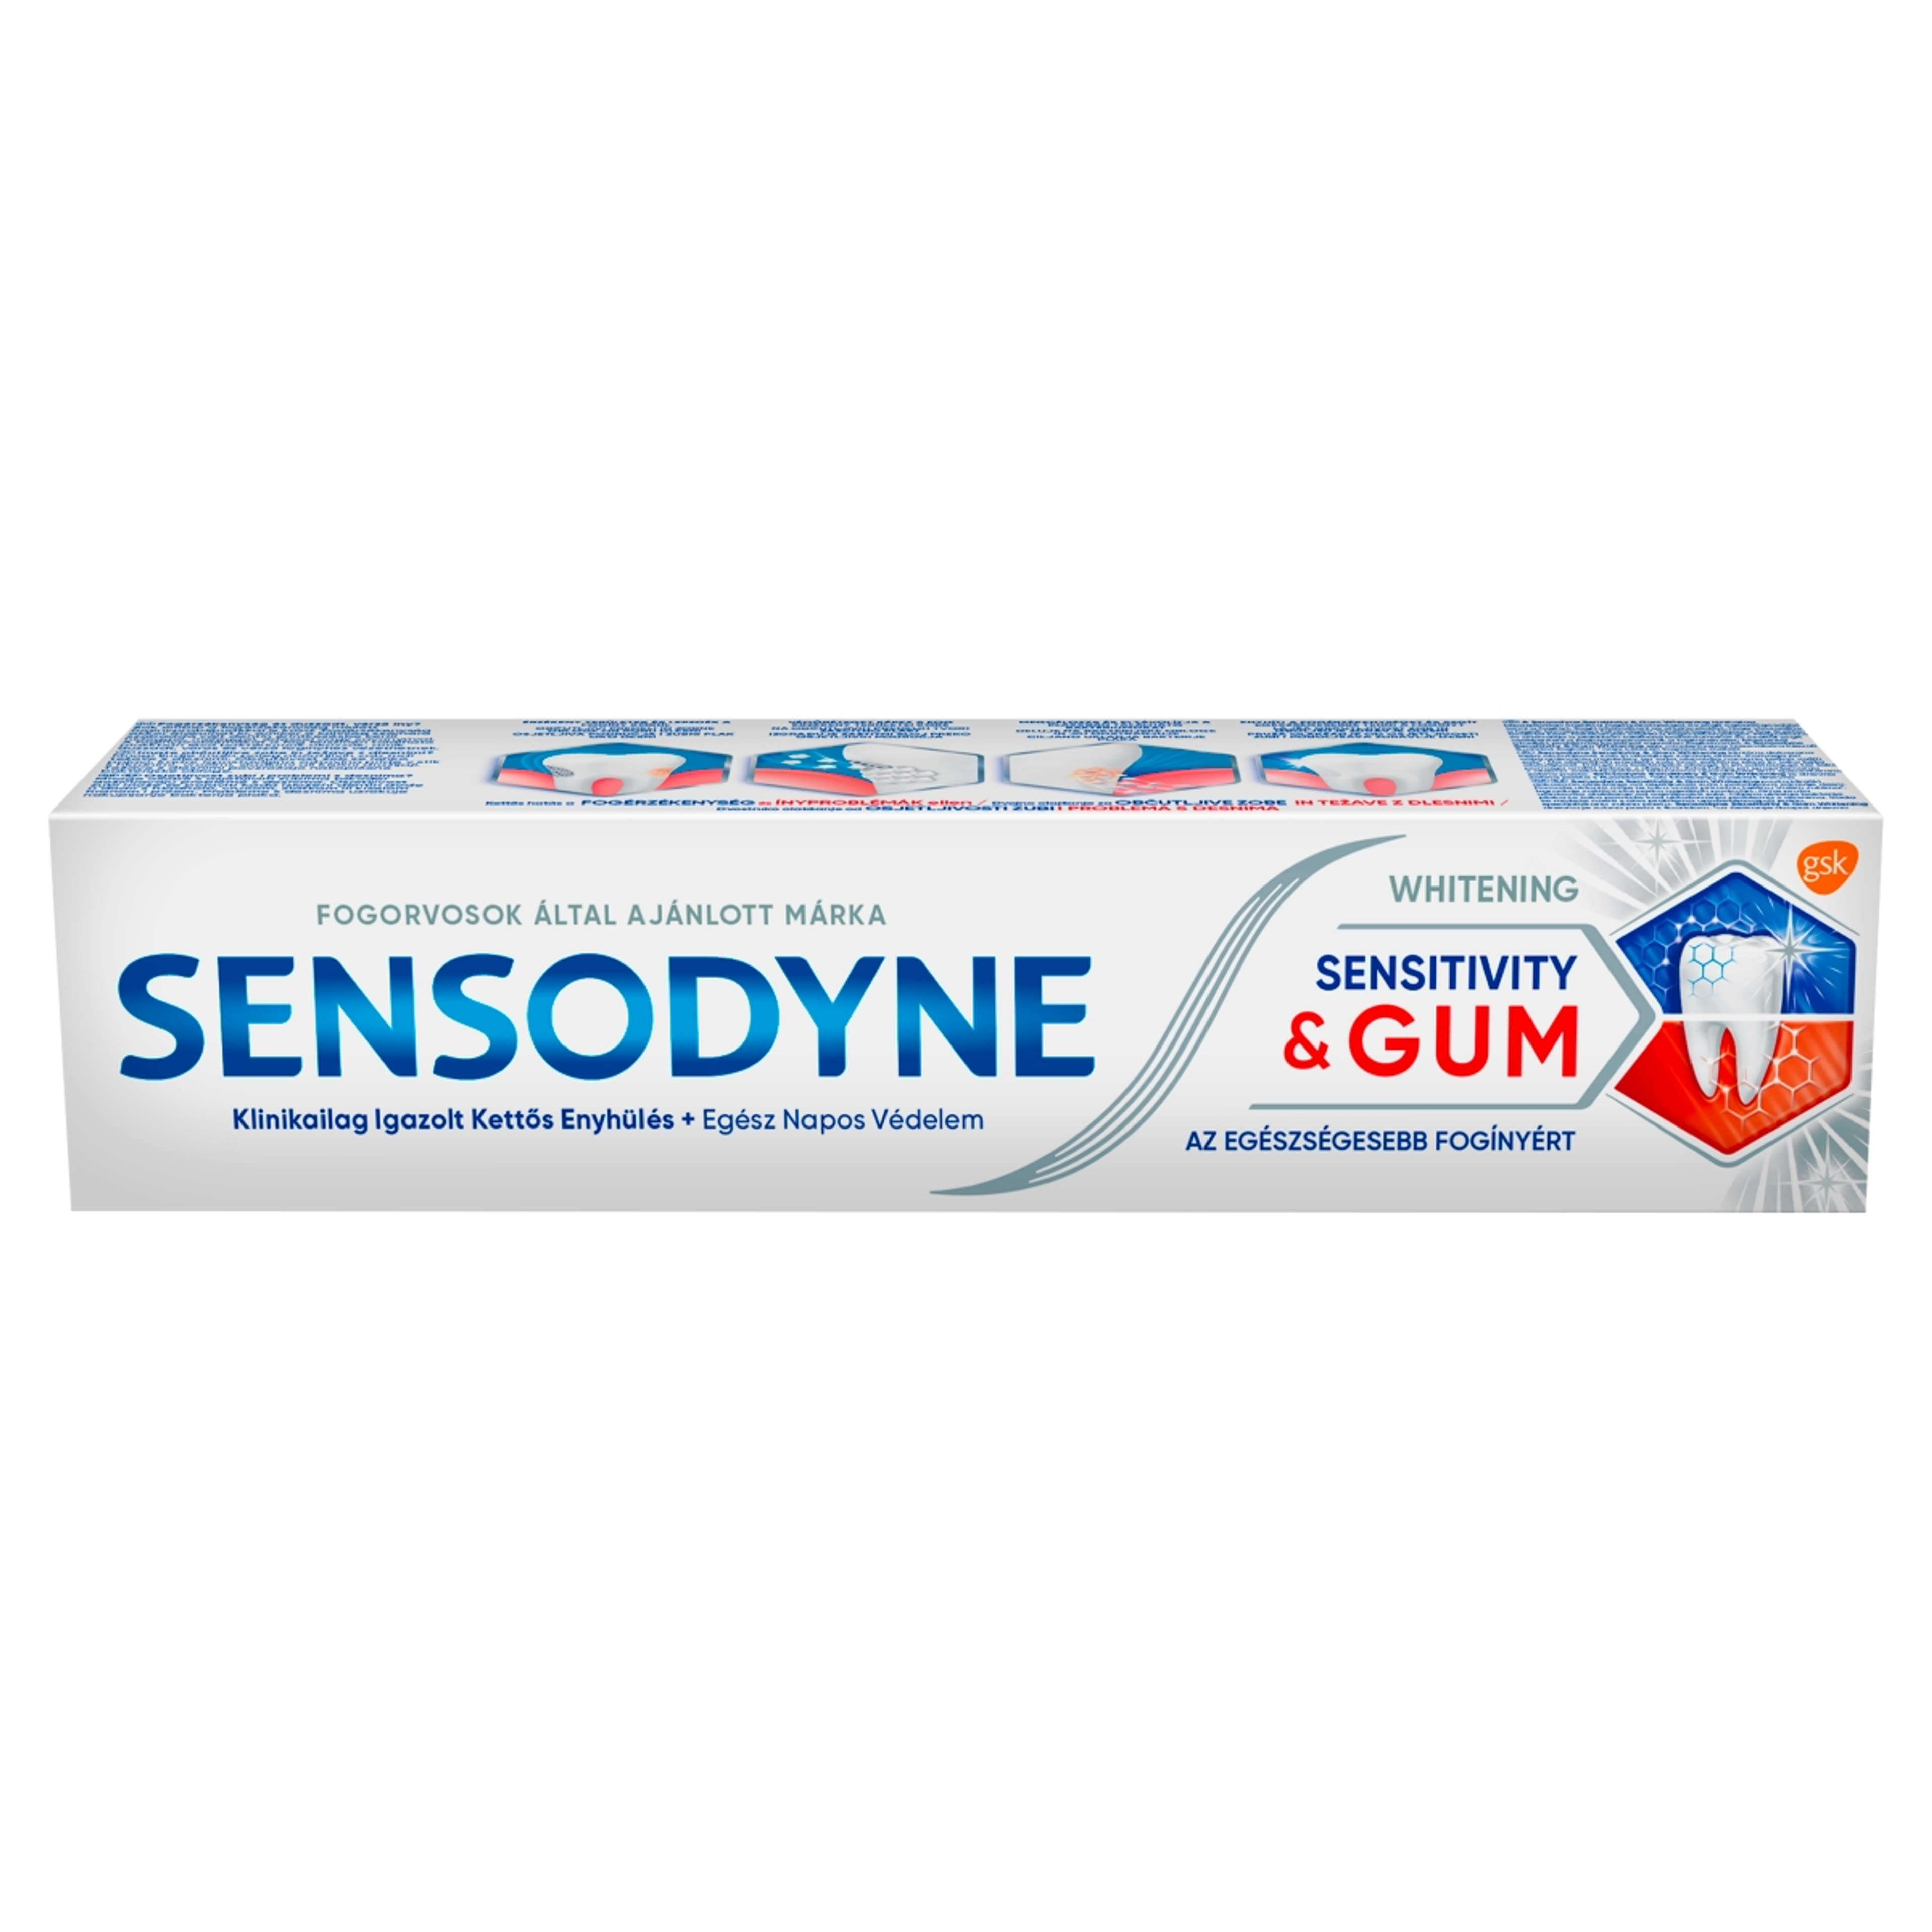 Sensodyne Sensitivity & Gum Whitening fogkrém - 75 ml-1